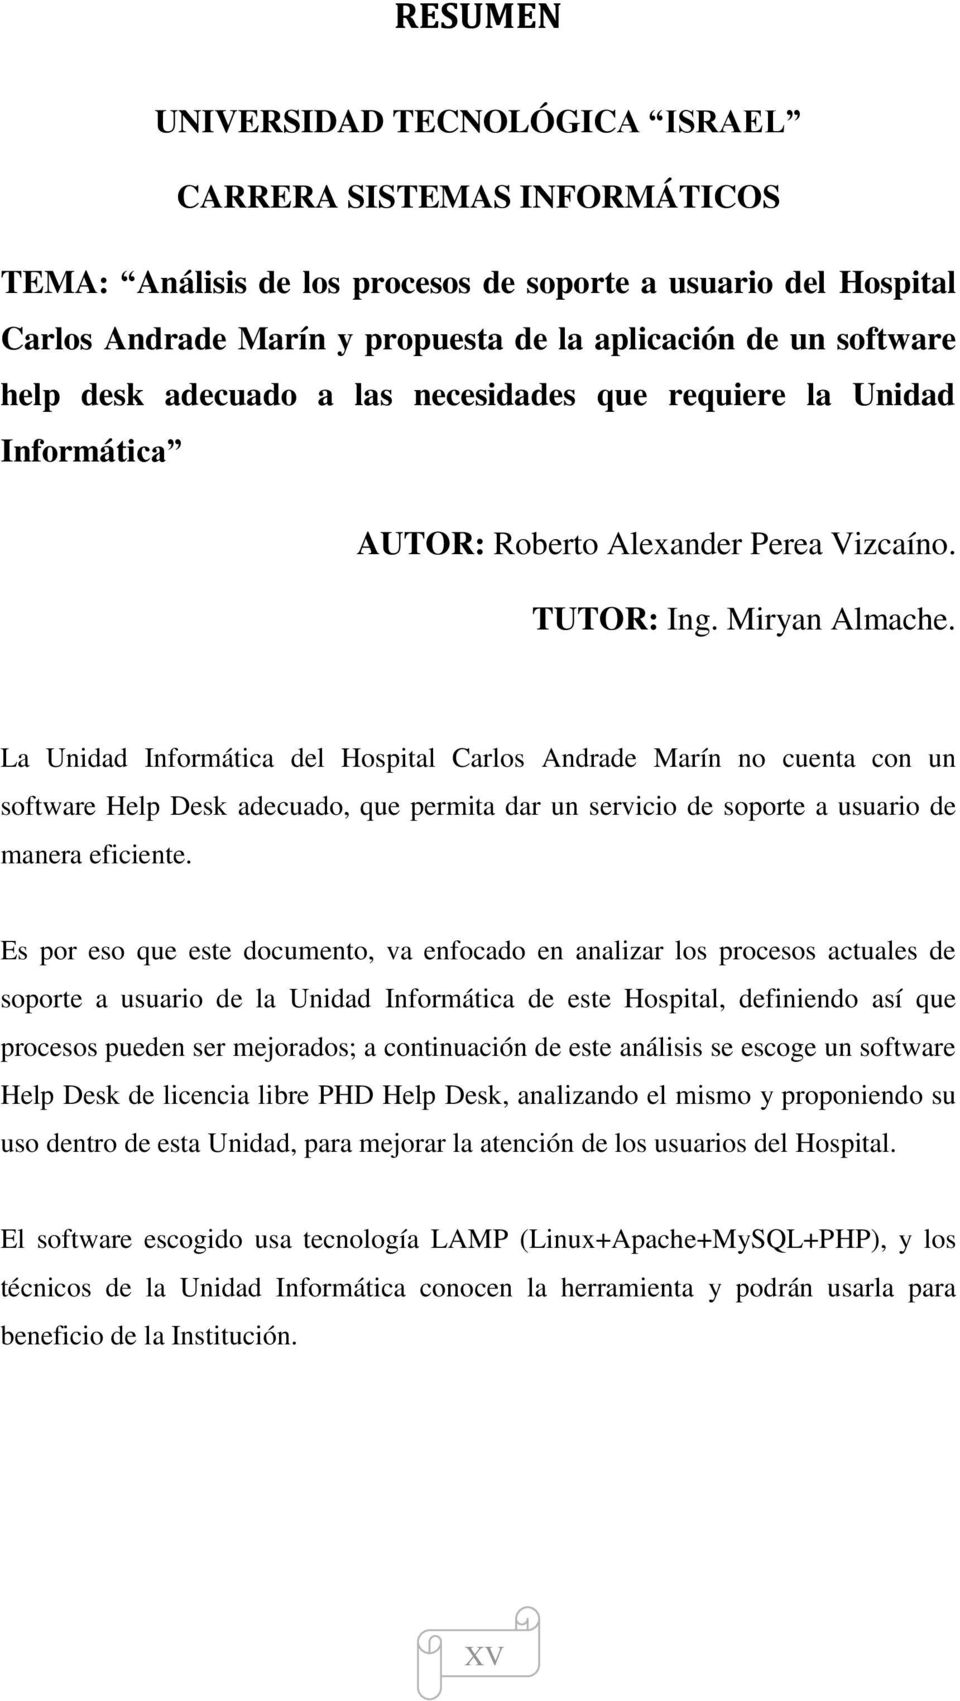 La Unidad Informática del Hospital Carlos Andrade Marín no cuenta con un software Help Desk adecuado, que permita dar un servicio de soporte a usuario de manera eficiente.